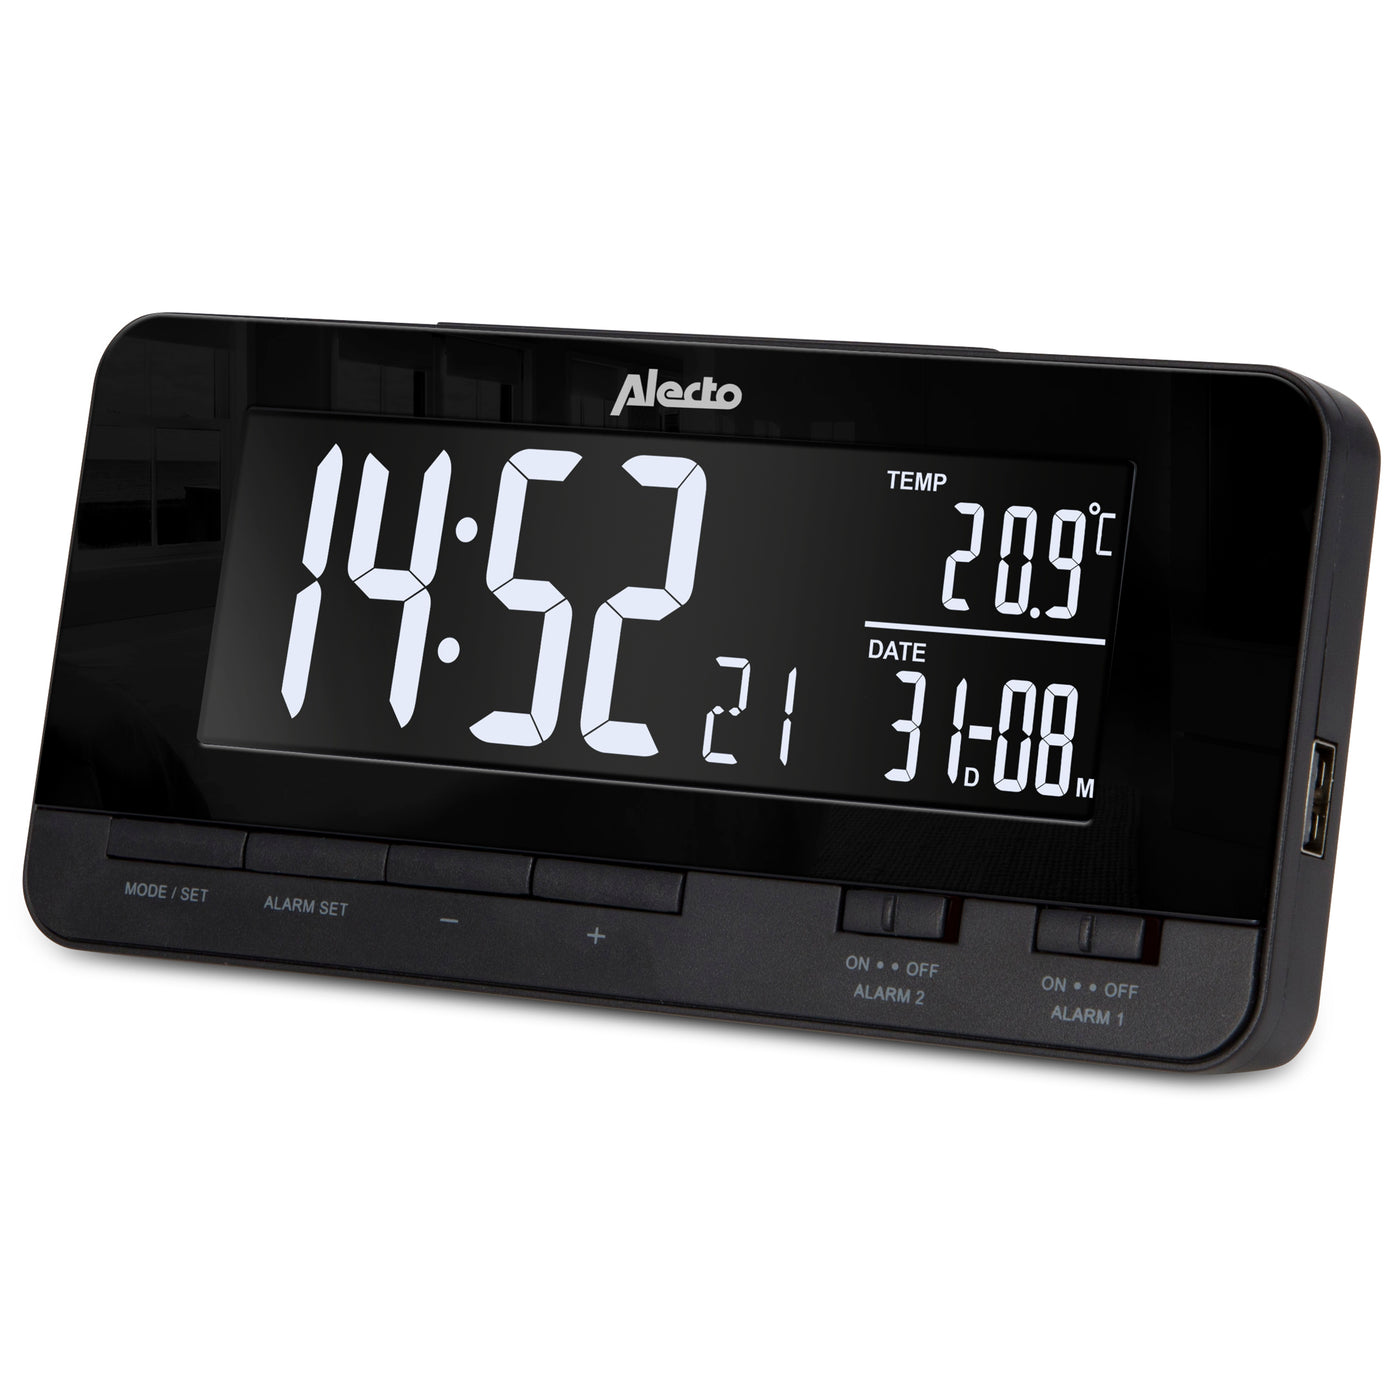 Alecto AK-60 - Alarm clock with temperature display, 2 USB